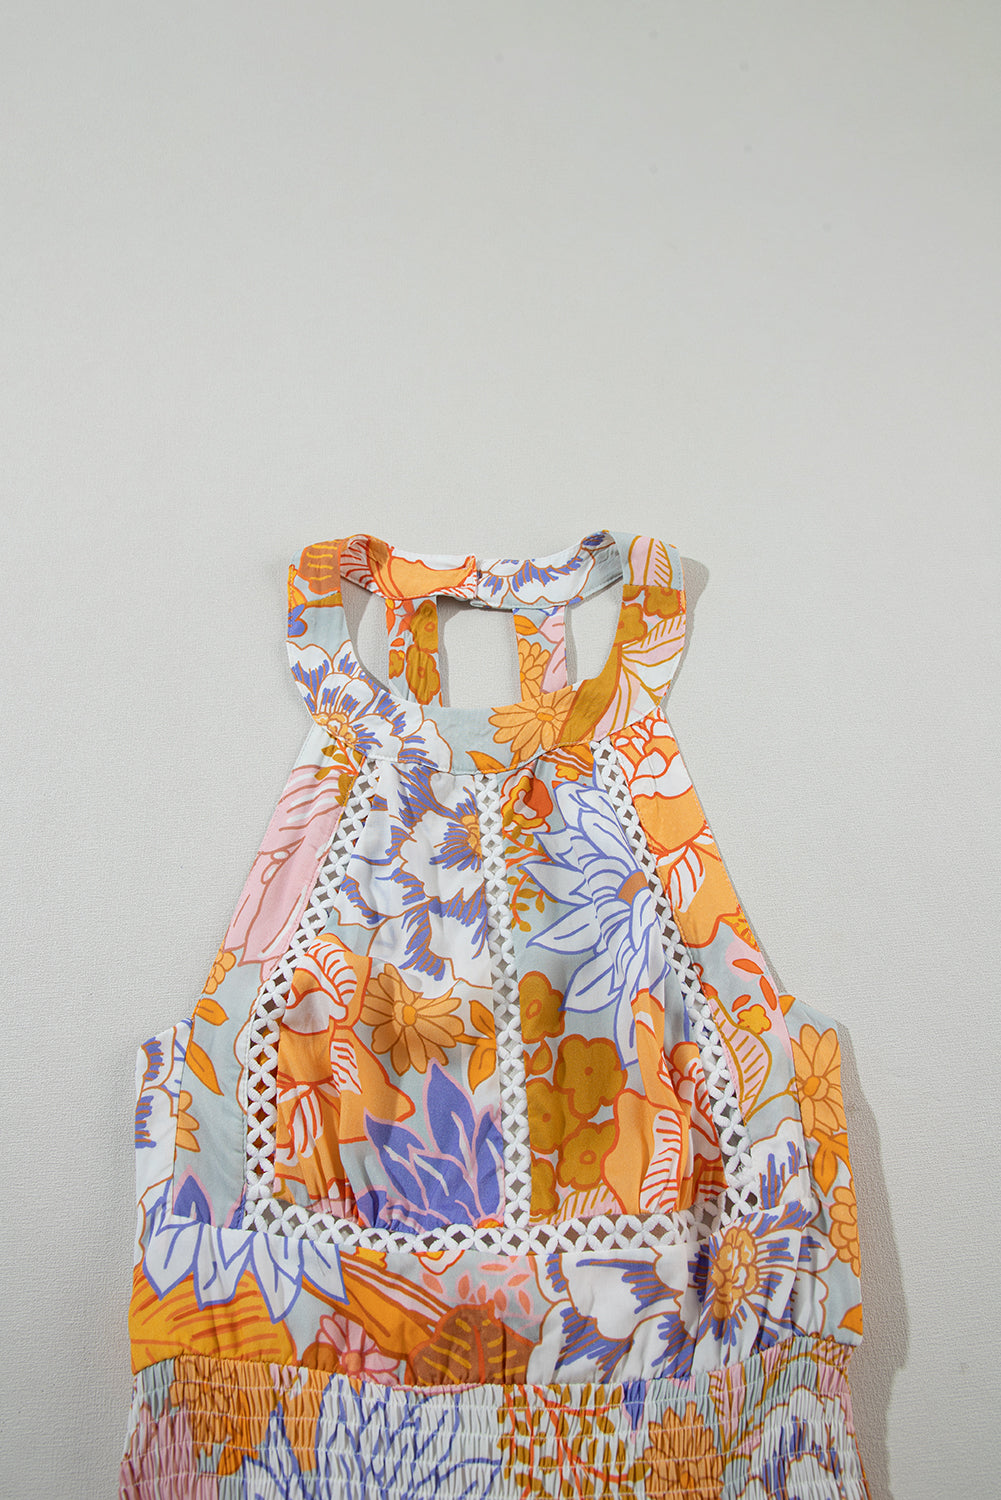 Orange Boho Floral Backless Lace up Sleeveless Maxi Dress